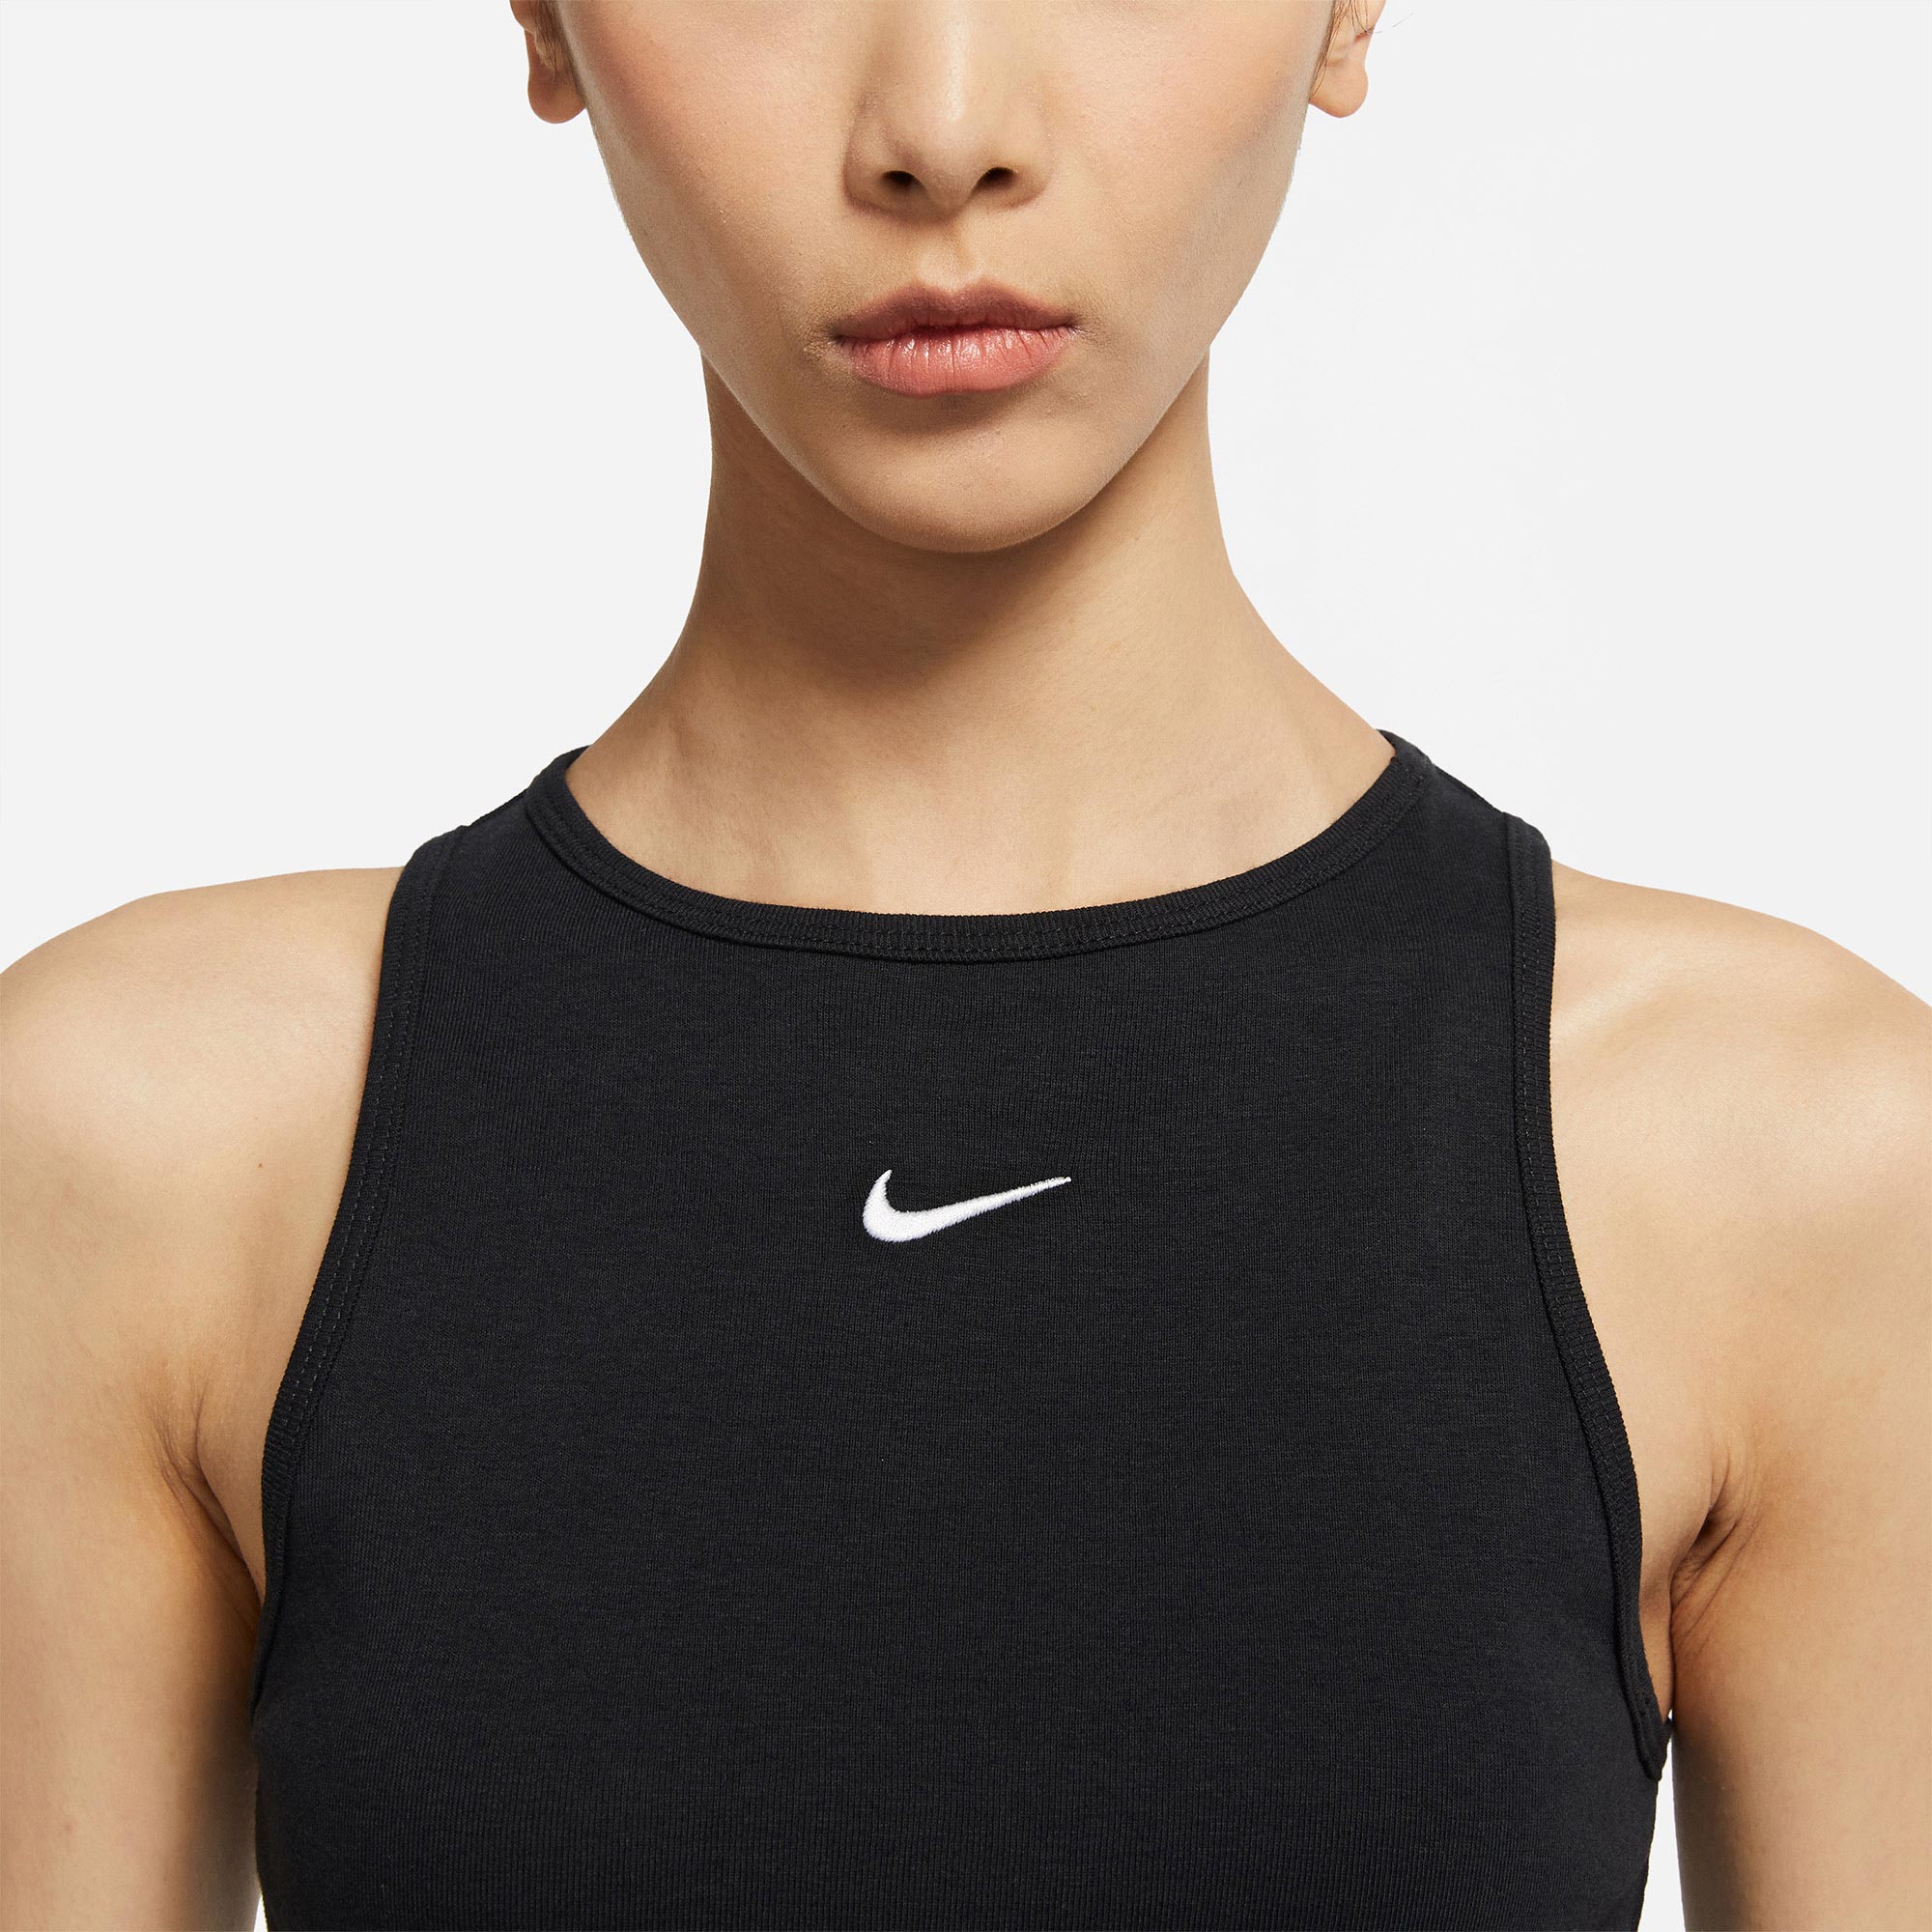 Áo Thun Thể Thao Nike Genuine 2021 New Women 's Abs9815-010 - 100-591 + + + 100%